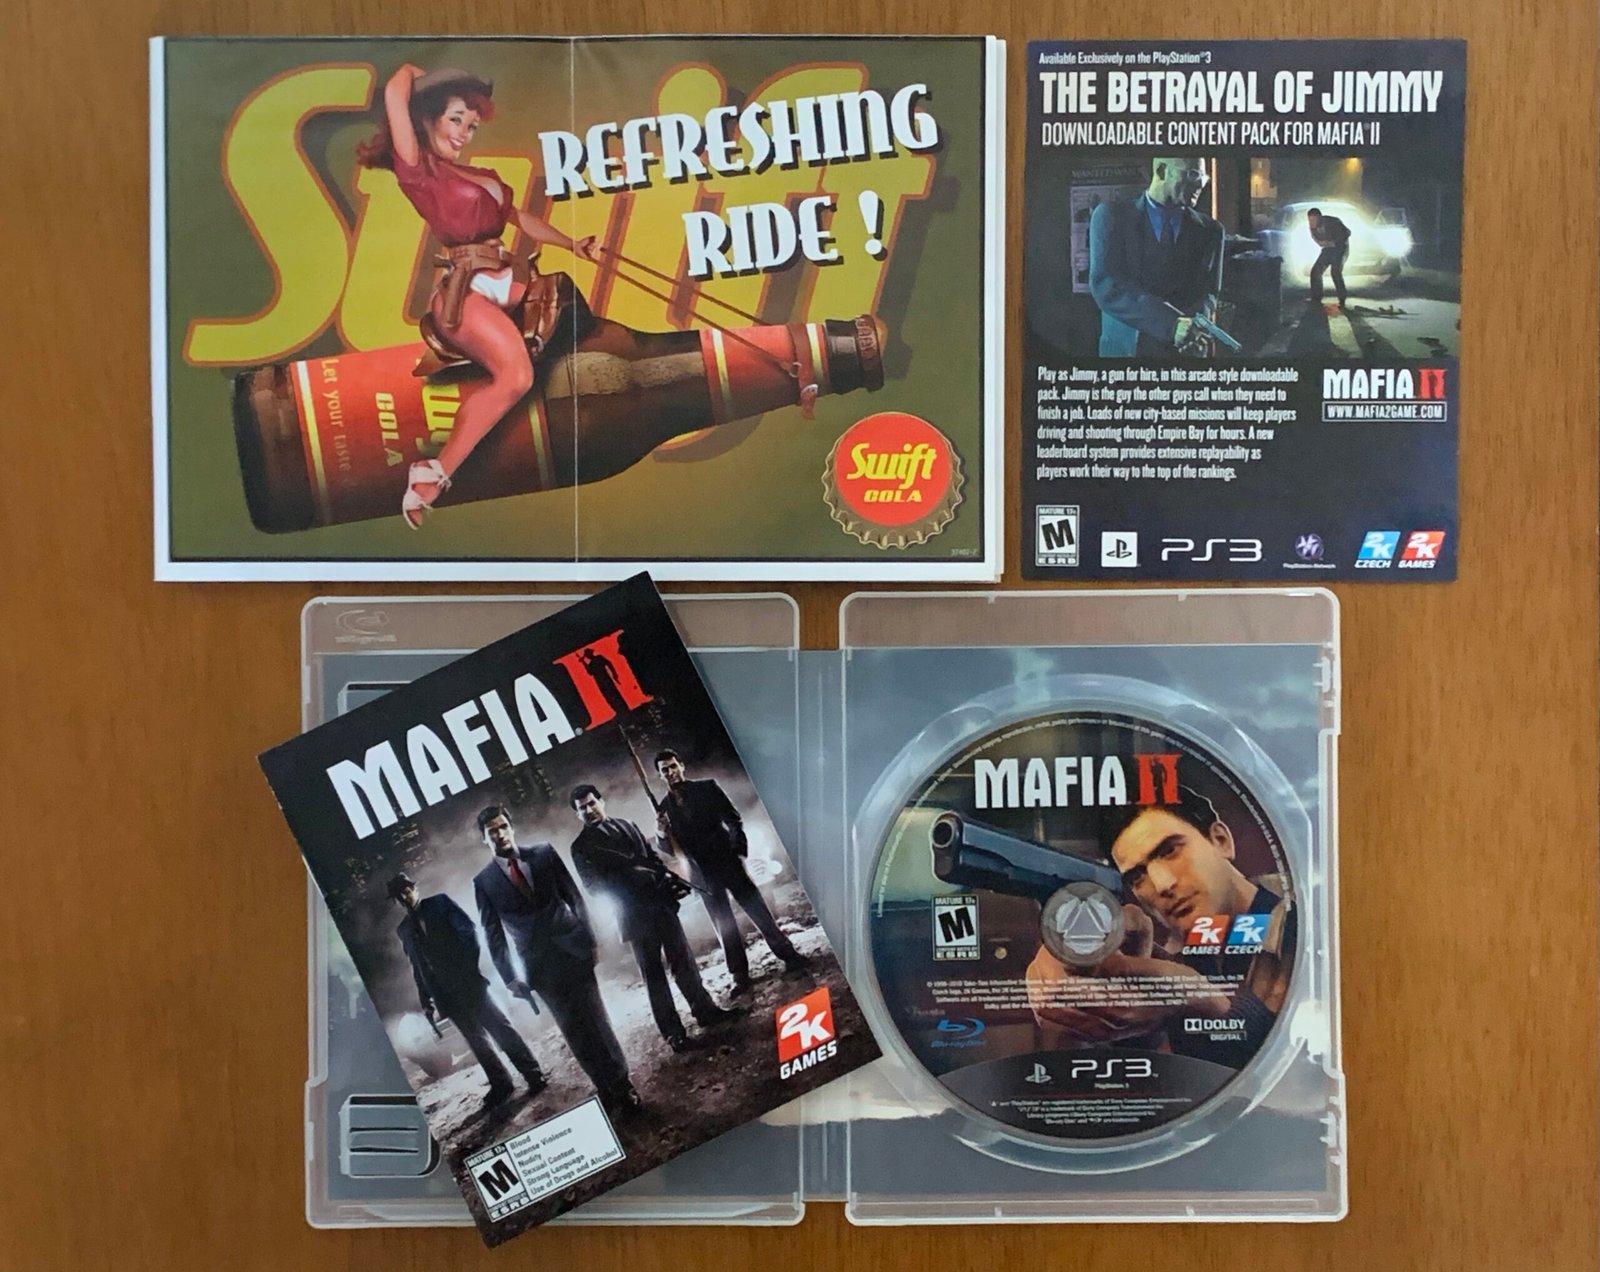 Mafia II Midia Digital Ps3 - WR Games Os melhores jogos estão aqui!!!!